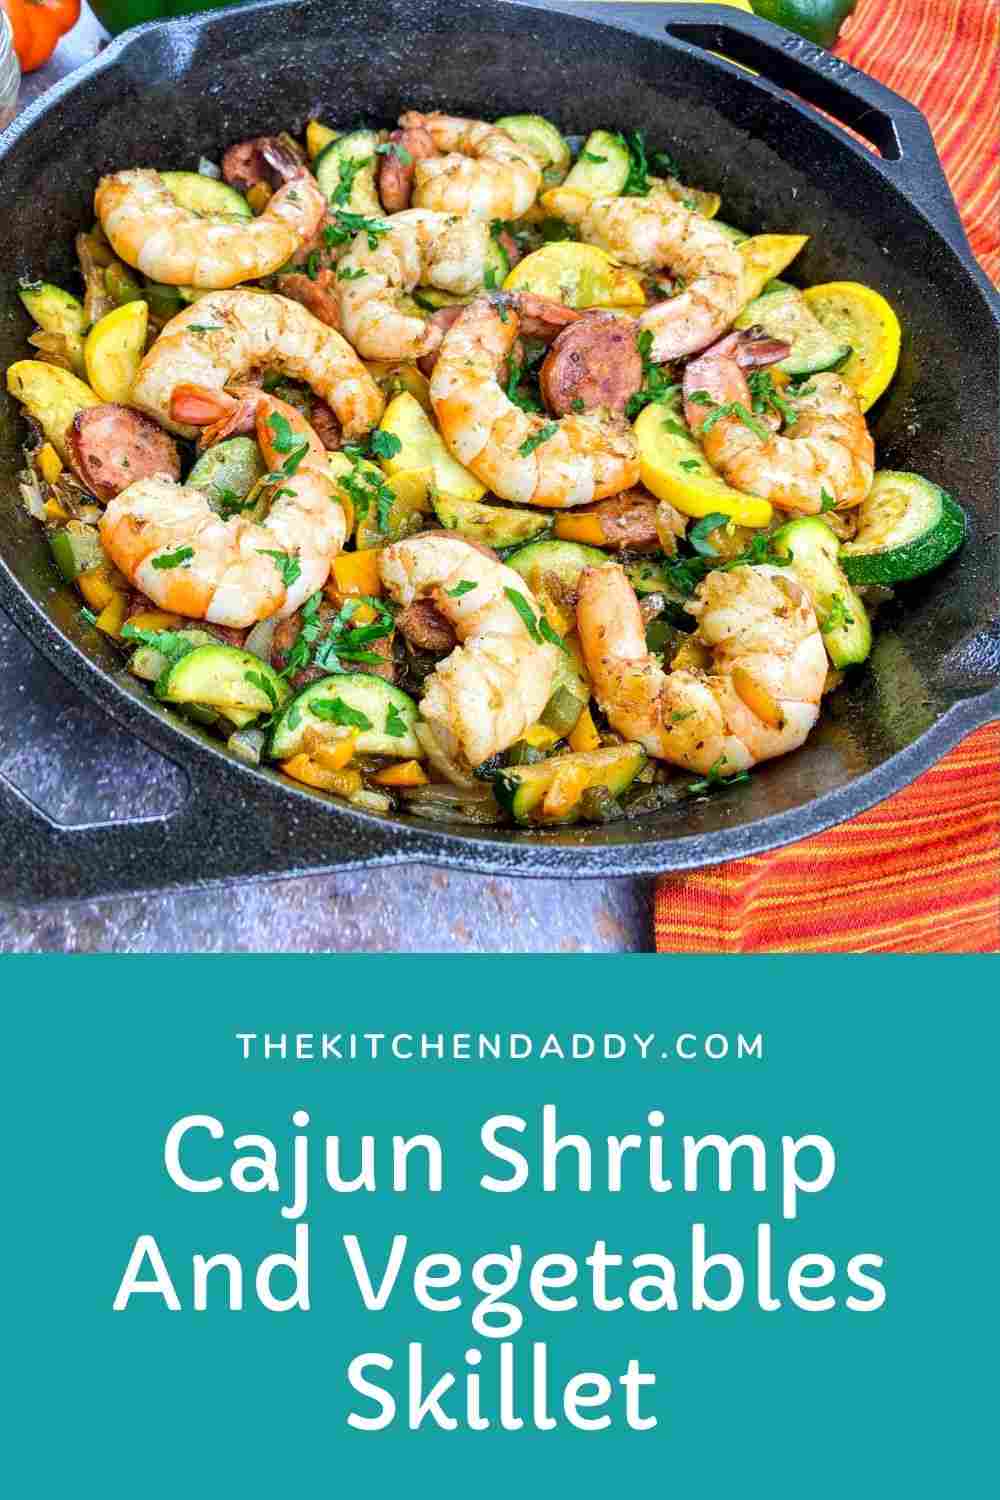 Cajun Shrimp And Vegetables Skillet